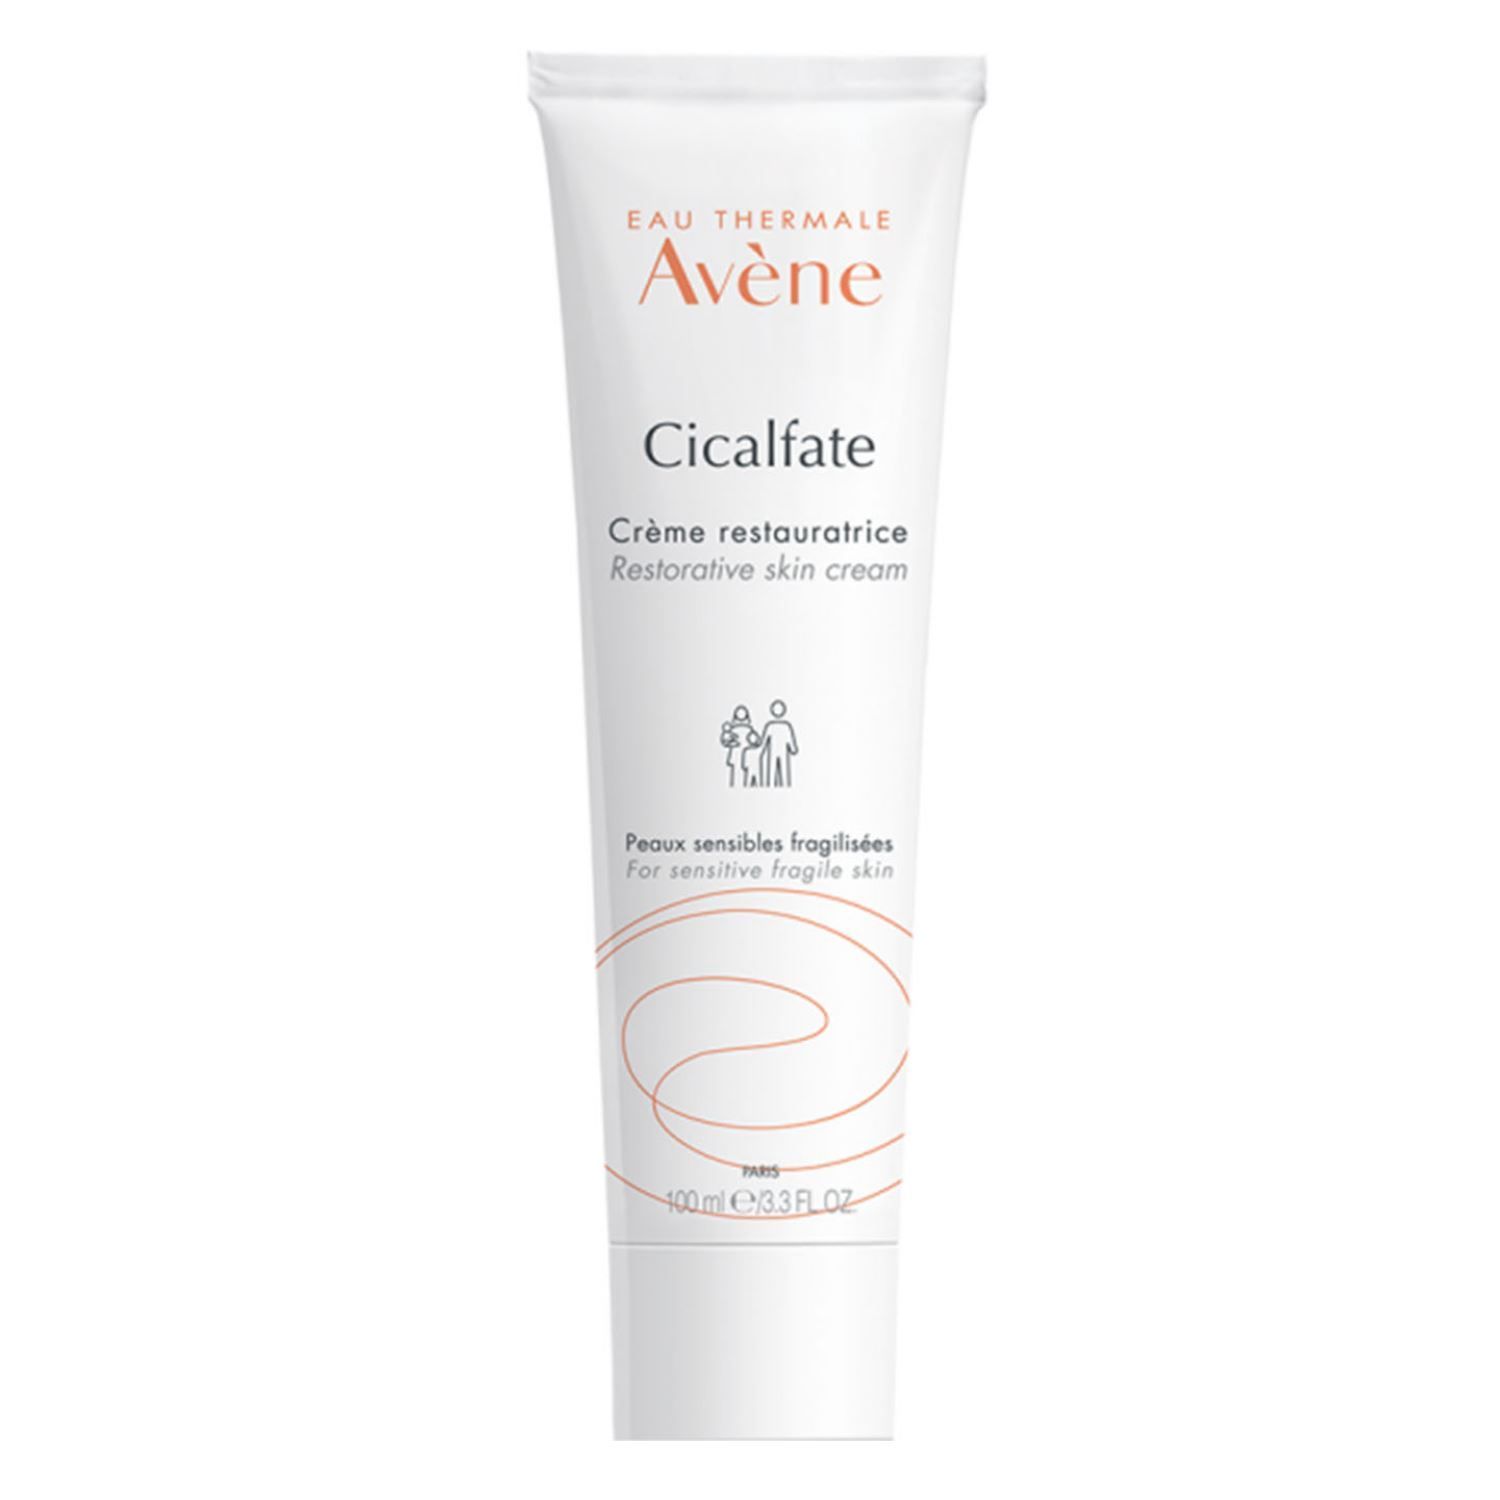 Da sau mụn: sản phẩm Avene Cicalfate Restorative Skin Cream